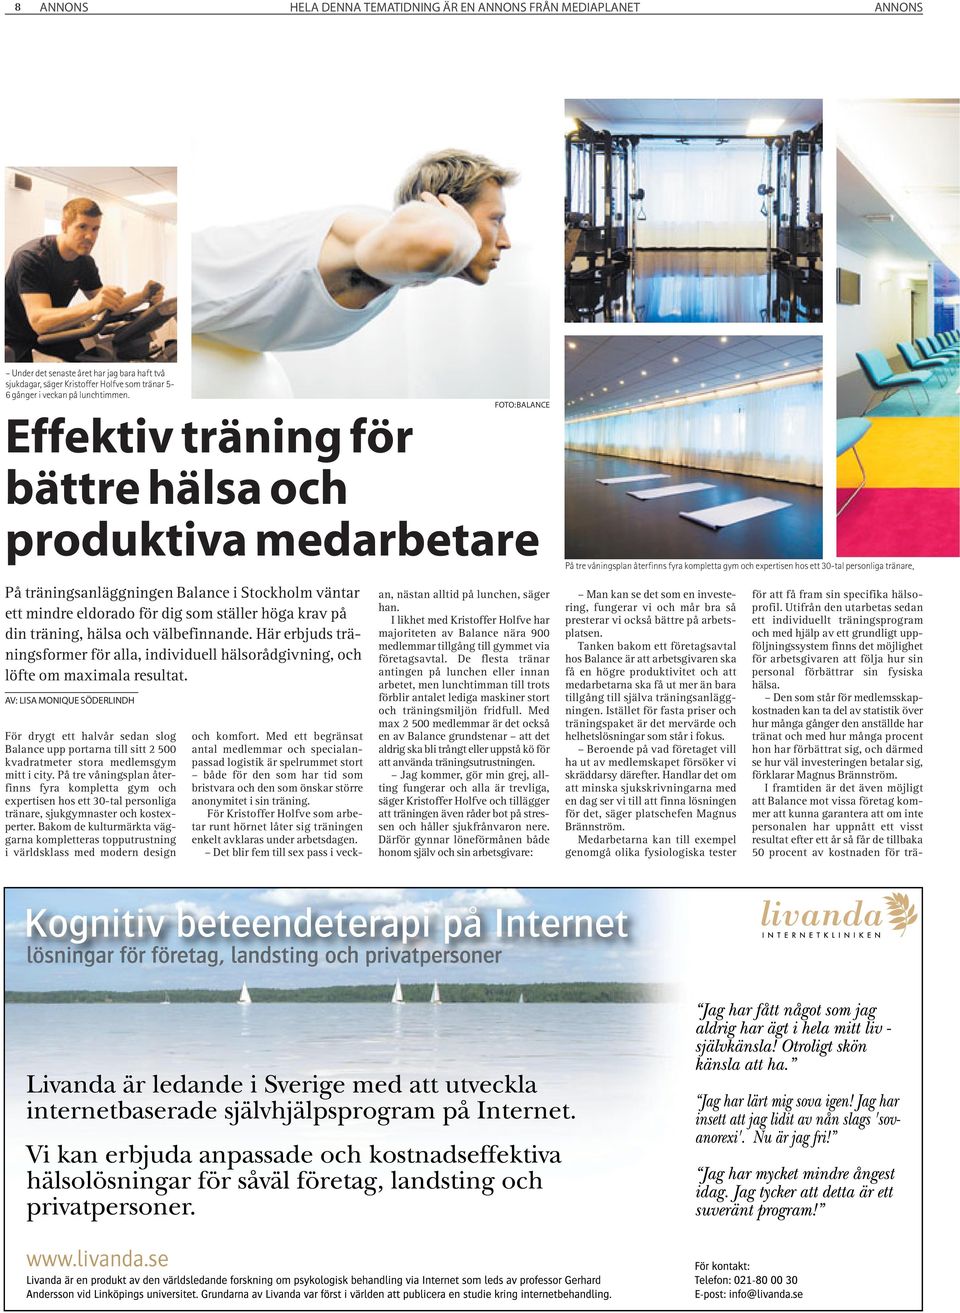 Balance i Stockholm väntar ett mindre eldorado för dig som ställer höga krav på din träning, hälsa och välbefinnande.